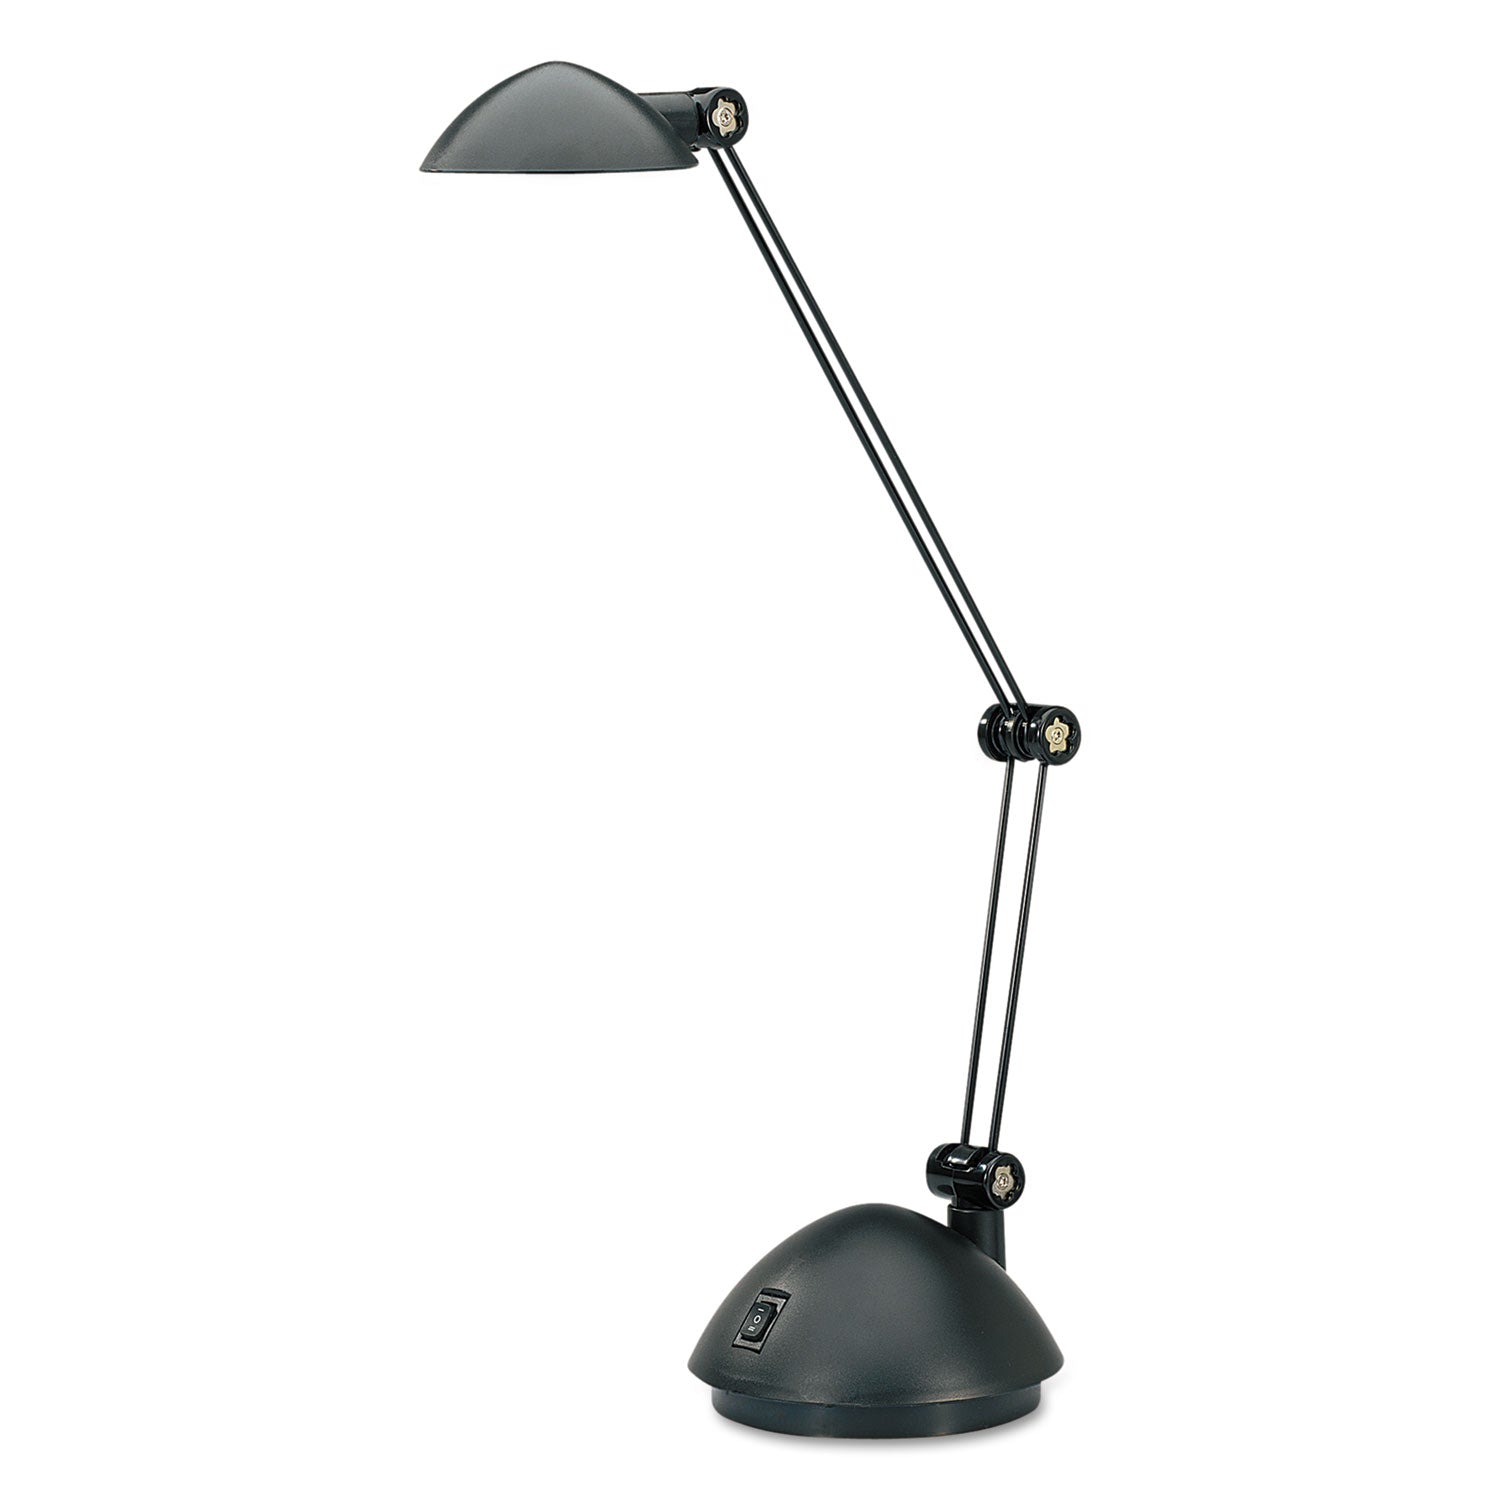 twin-arm-task-led-lamp-with-usb-port-1188w-x-513d-x-185h-black_aleled912b - 2